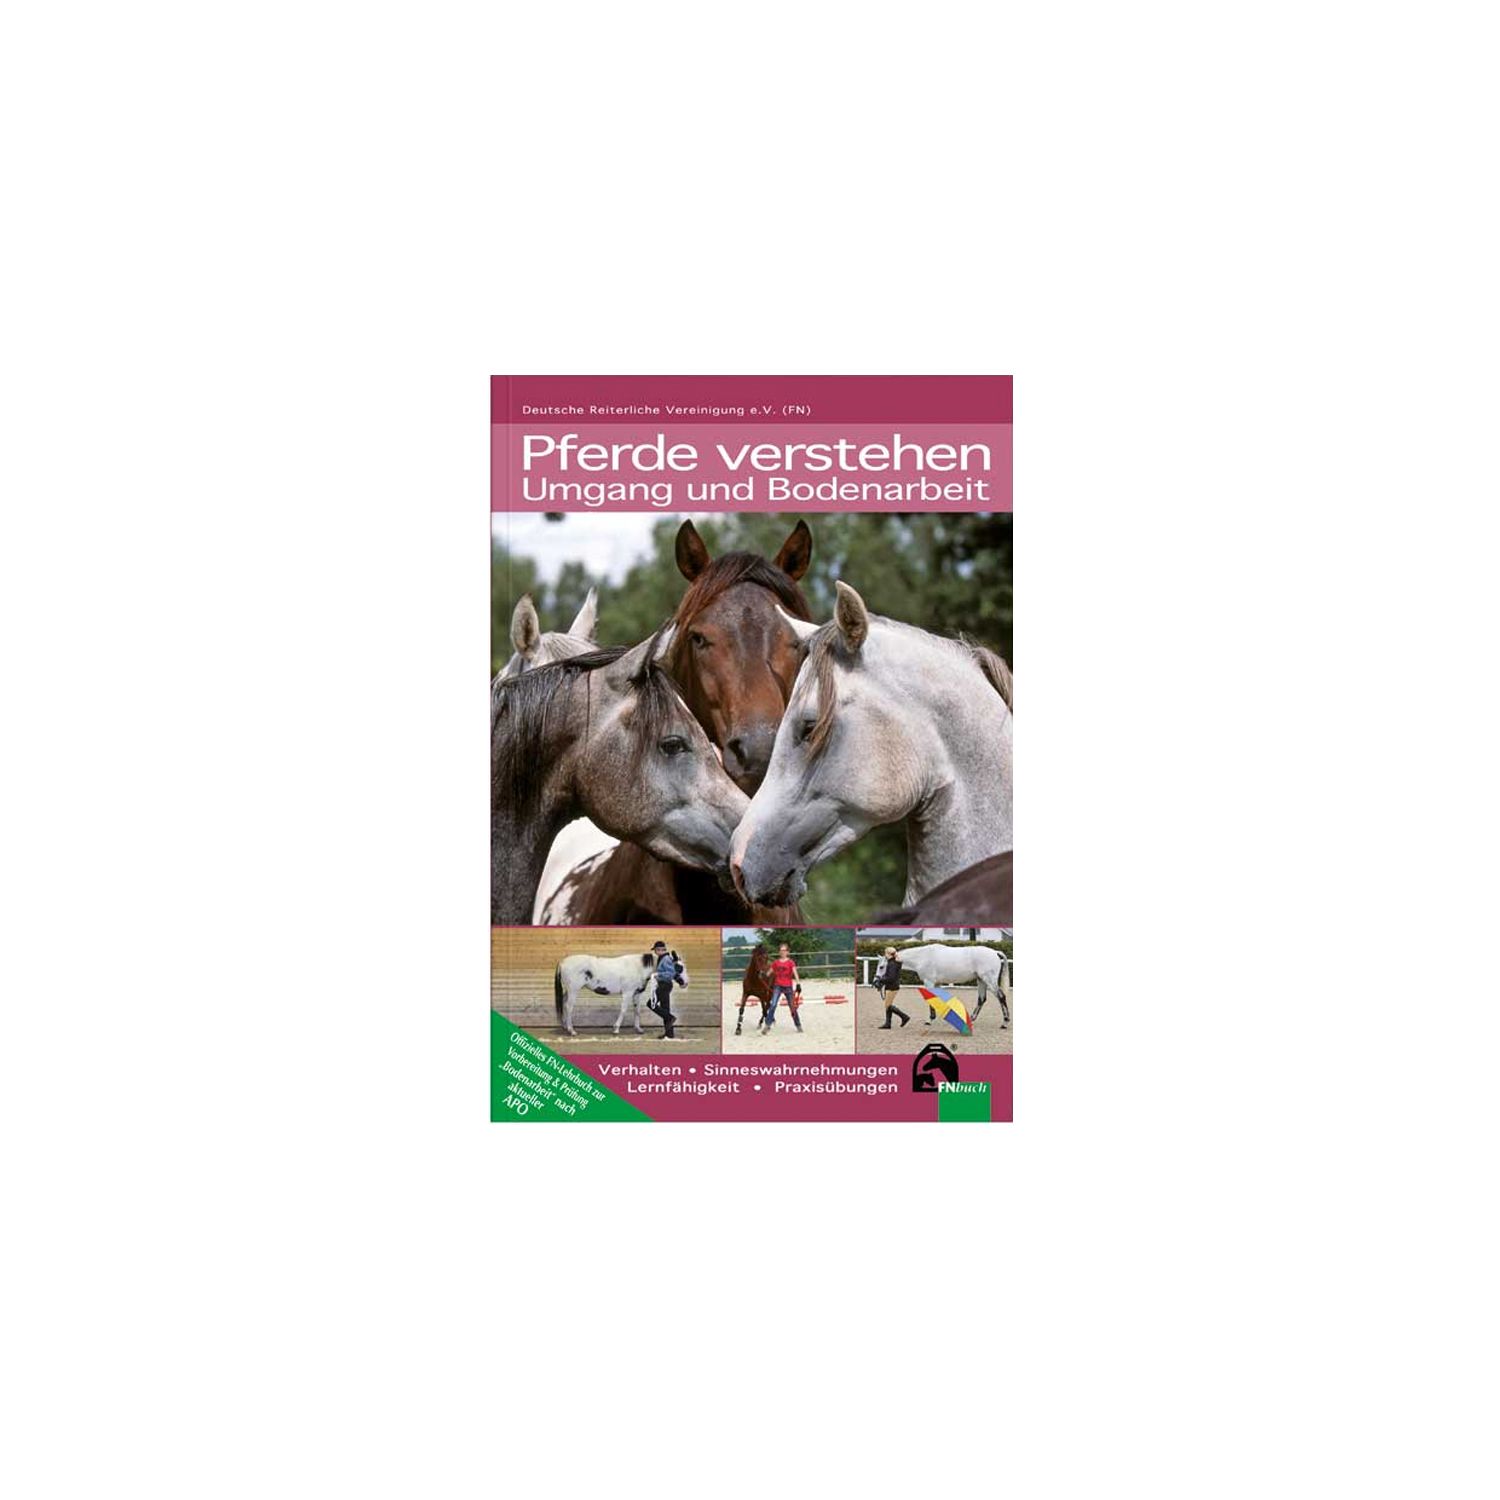 Pferde verstehen - Umgang und Bodenarbeit, FNverlag 